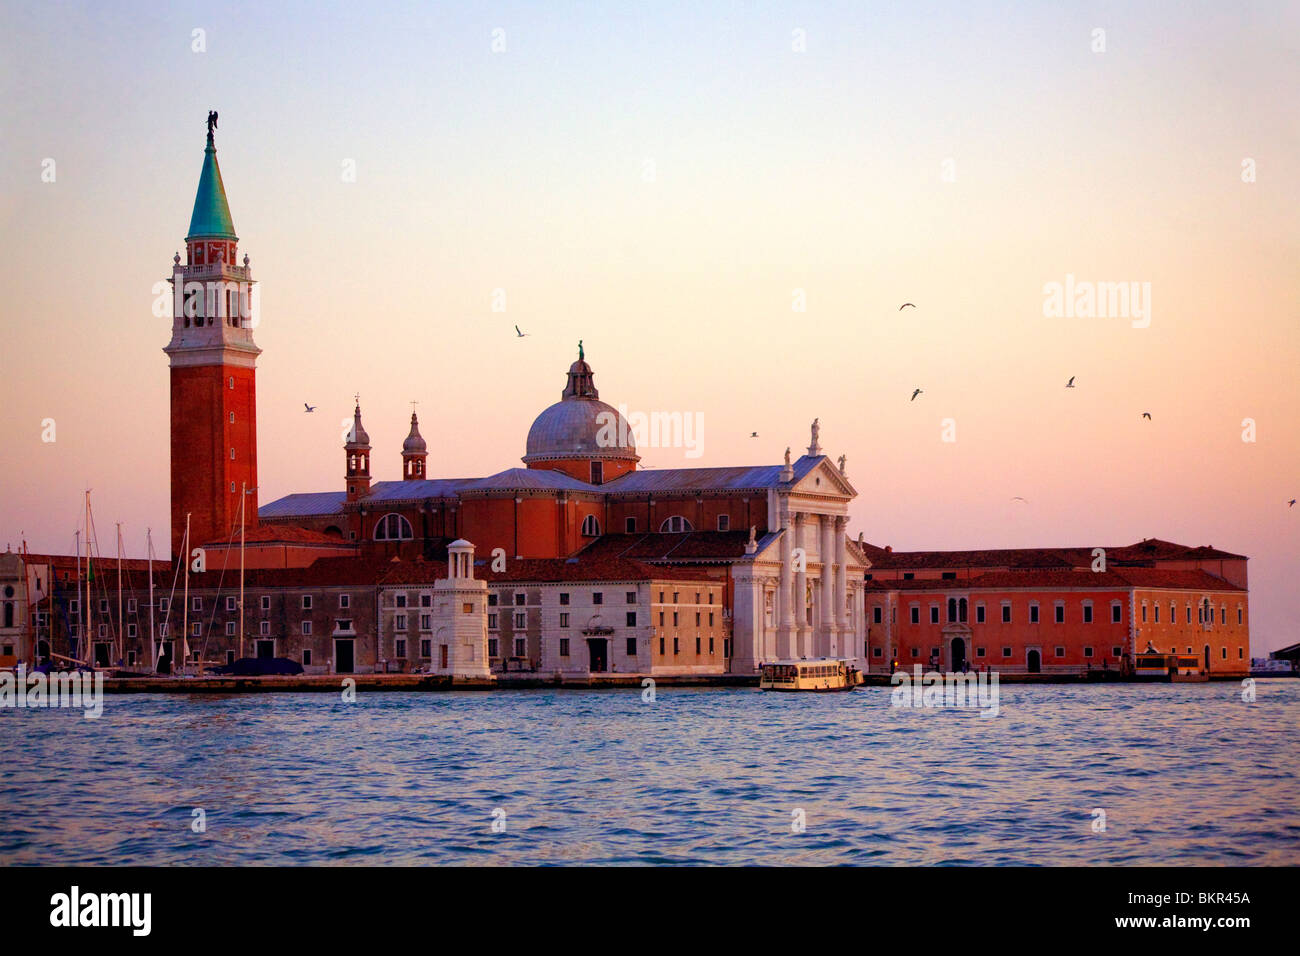 Italie, Vénétie, Venise, île de San Giorgio Maggiore avec la principale église dédiée à la sainte. Banque D'Images